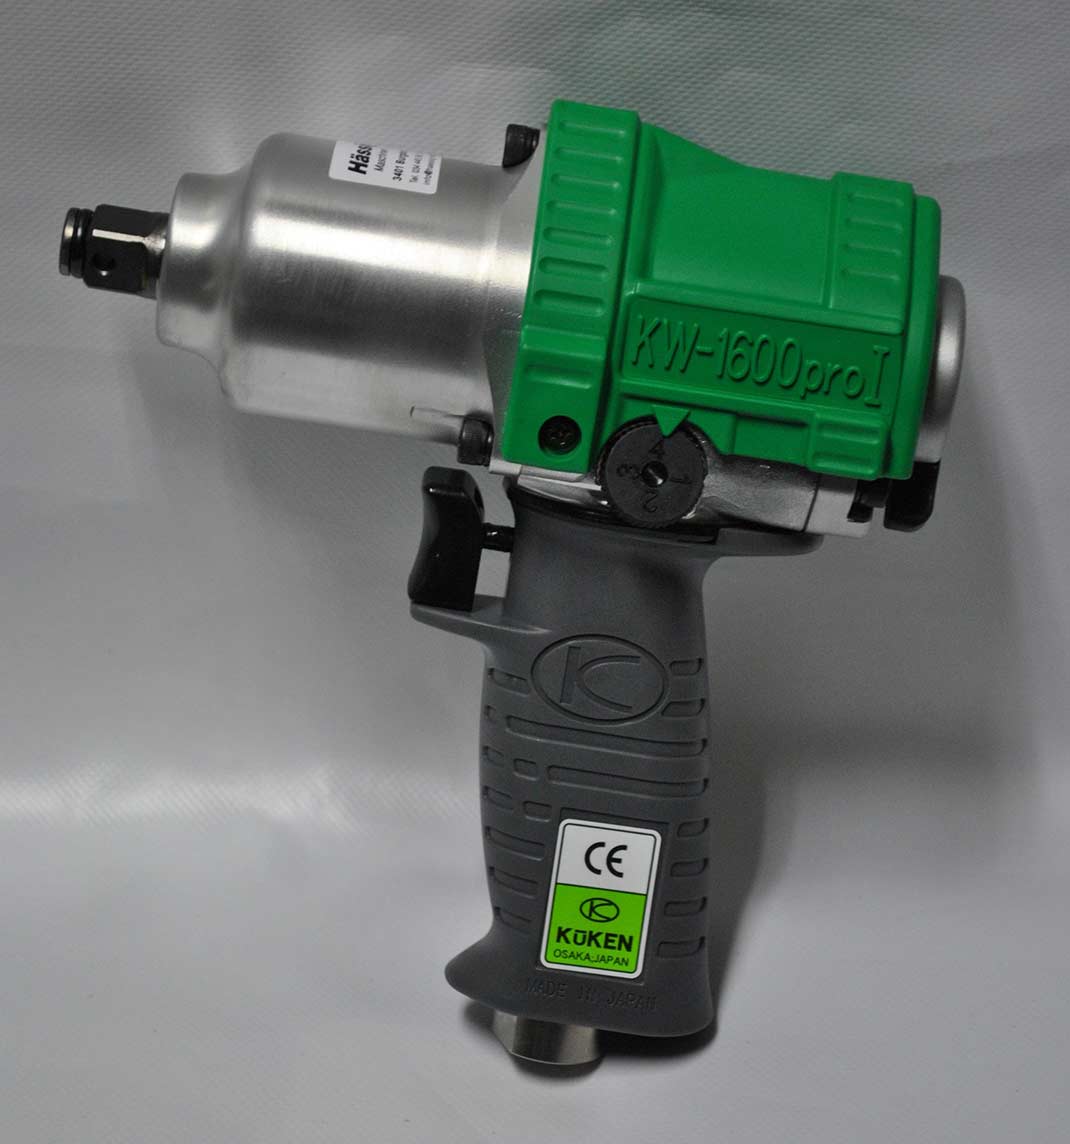 Druckluftschlagschrauber Kuken KW 1600 Pro I grün 1/2